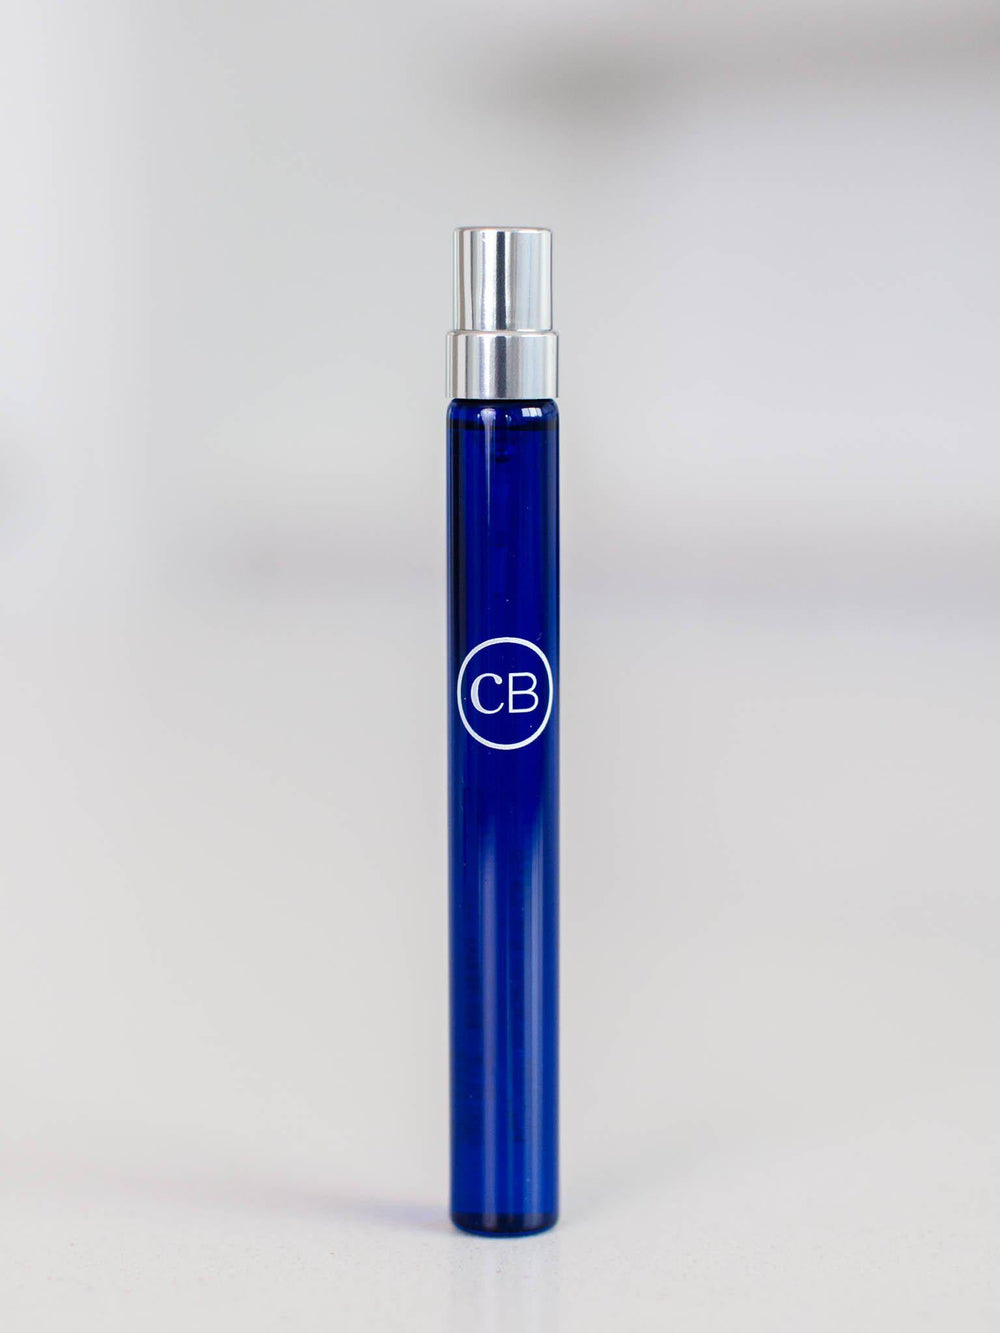 Capri Blue-Capri Blu Signature Parfum Spray Pen - Leela and Lavender